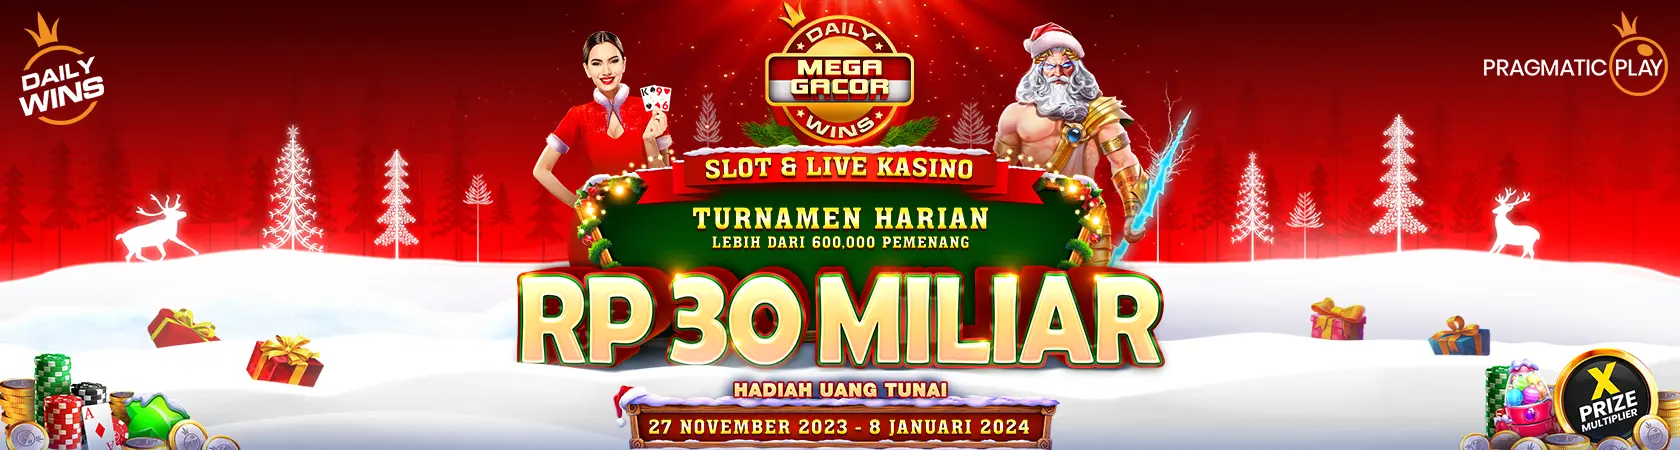 Banner Slot PP Mega Gacor Slot & Live Casino Dec'23